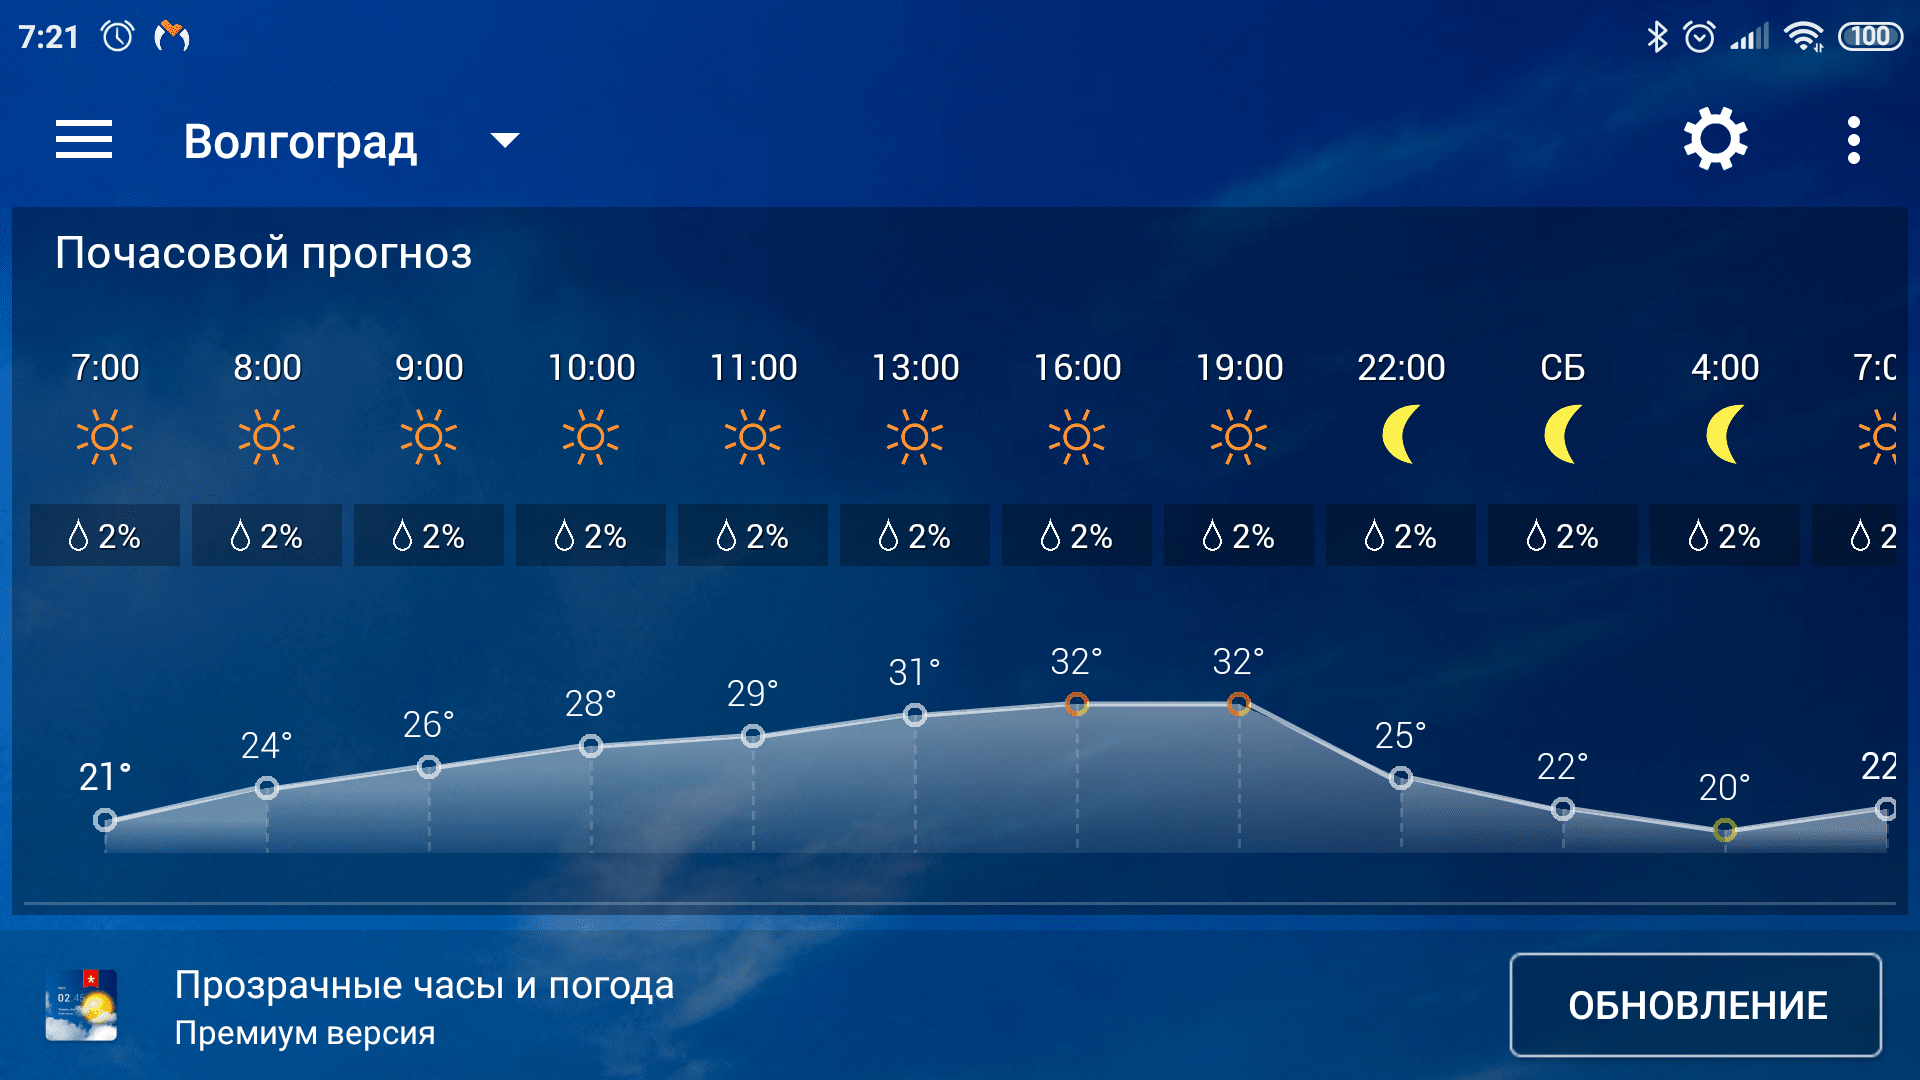 Погода завтра в 12 часов. Погода. Погода в Волгограде. Прогноз погоды в Волгограде. Погода в Волгограде на завтра.